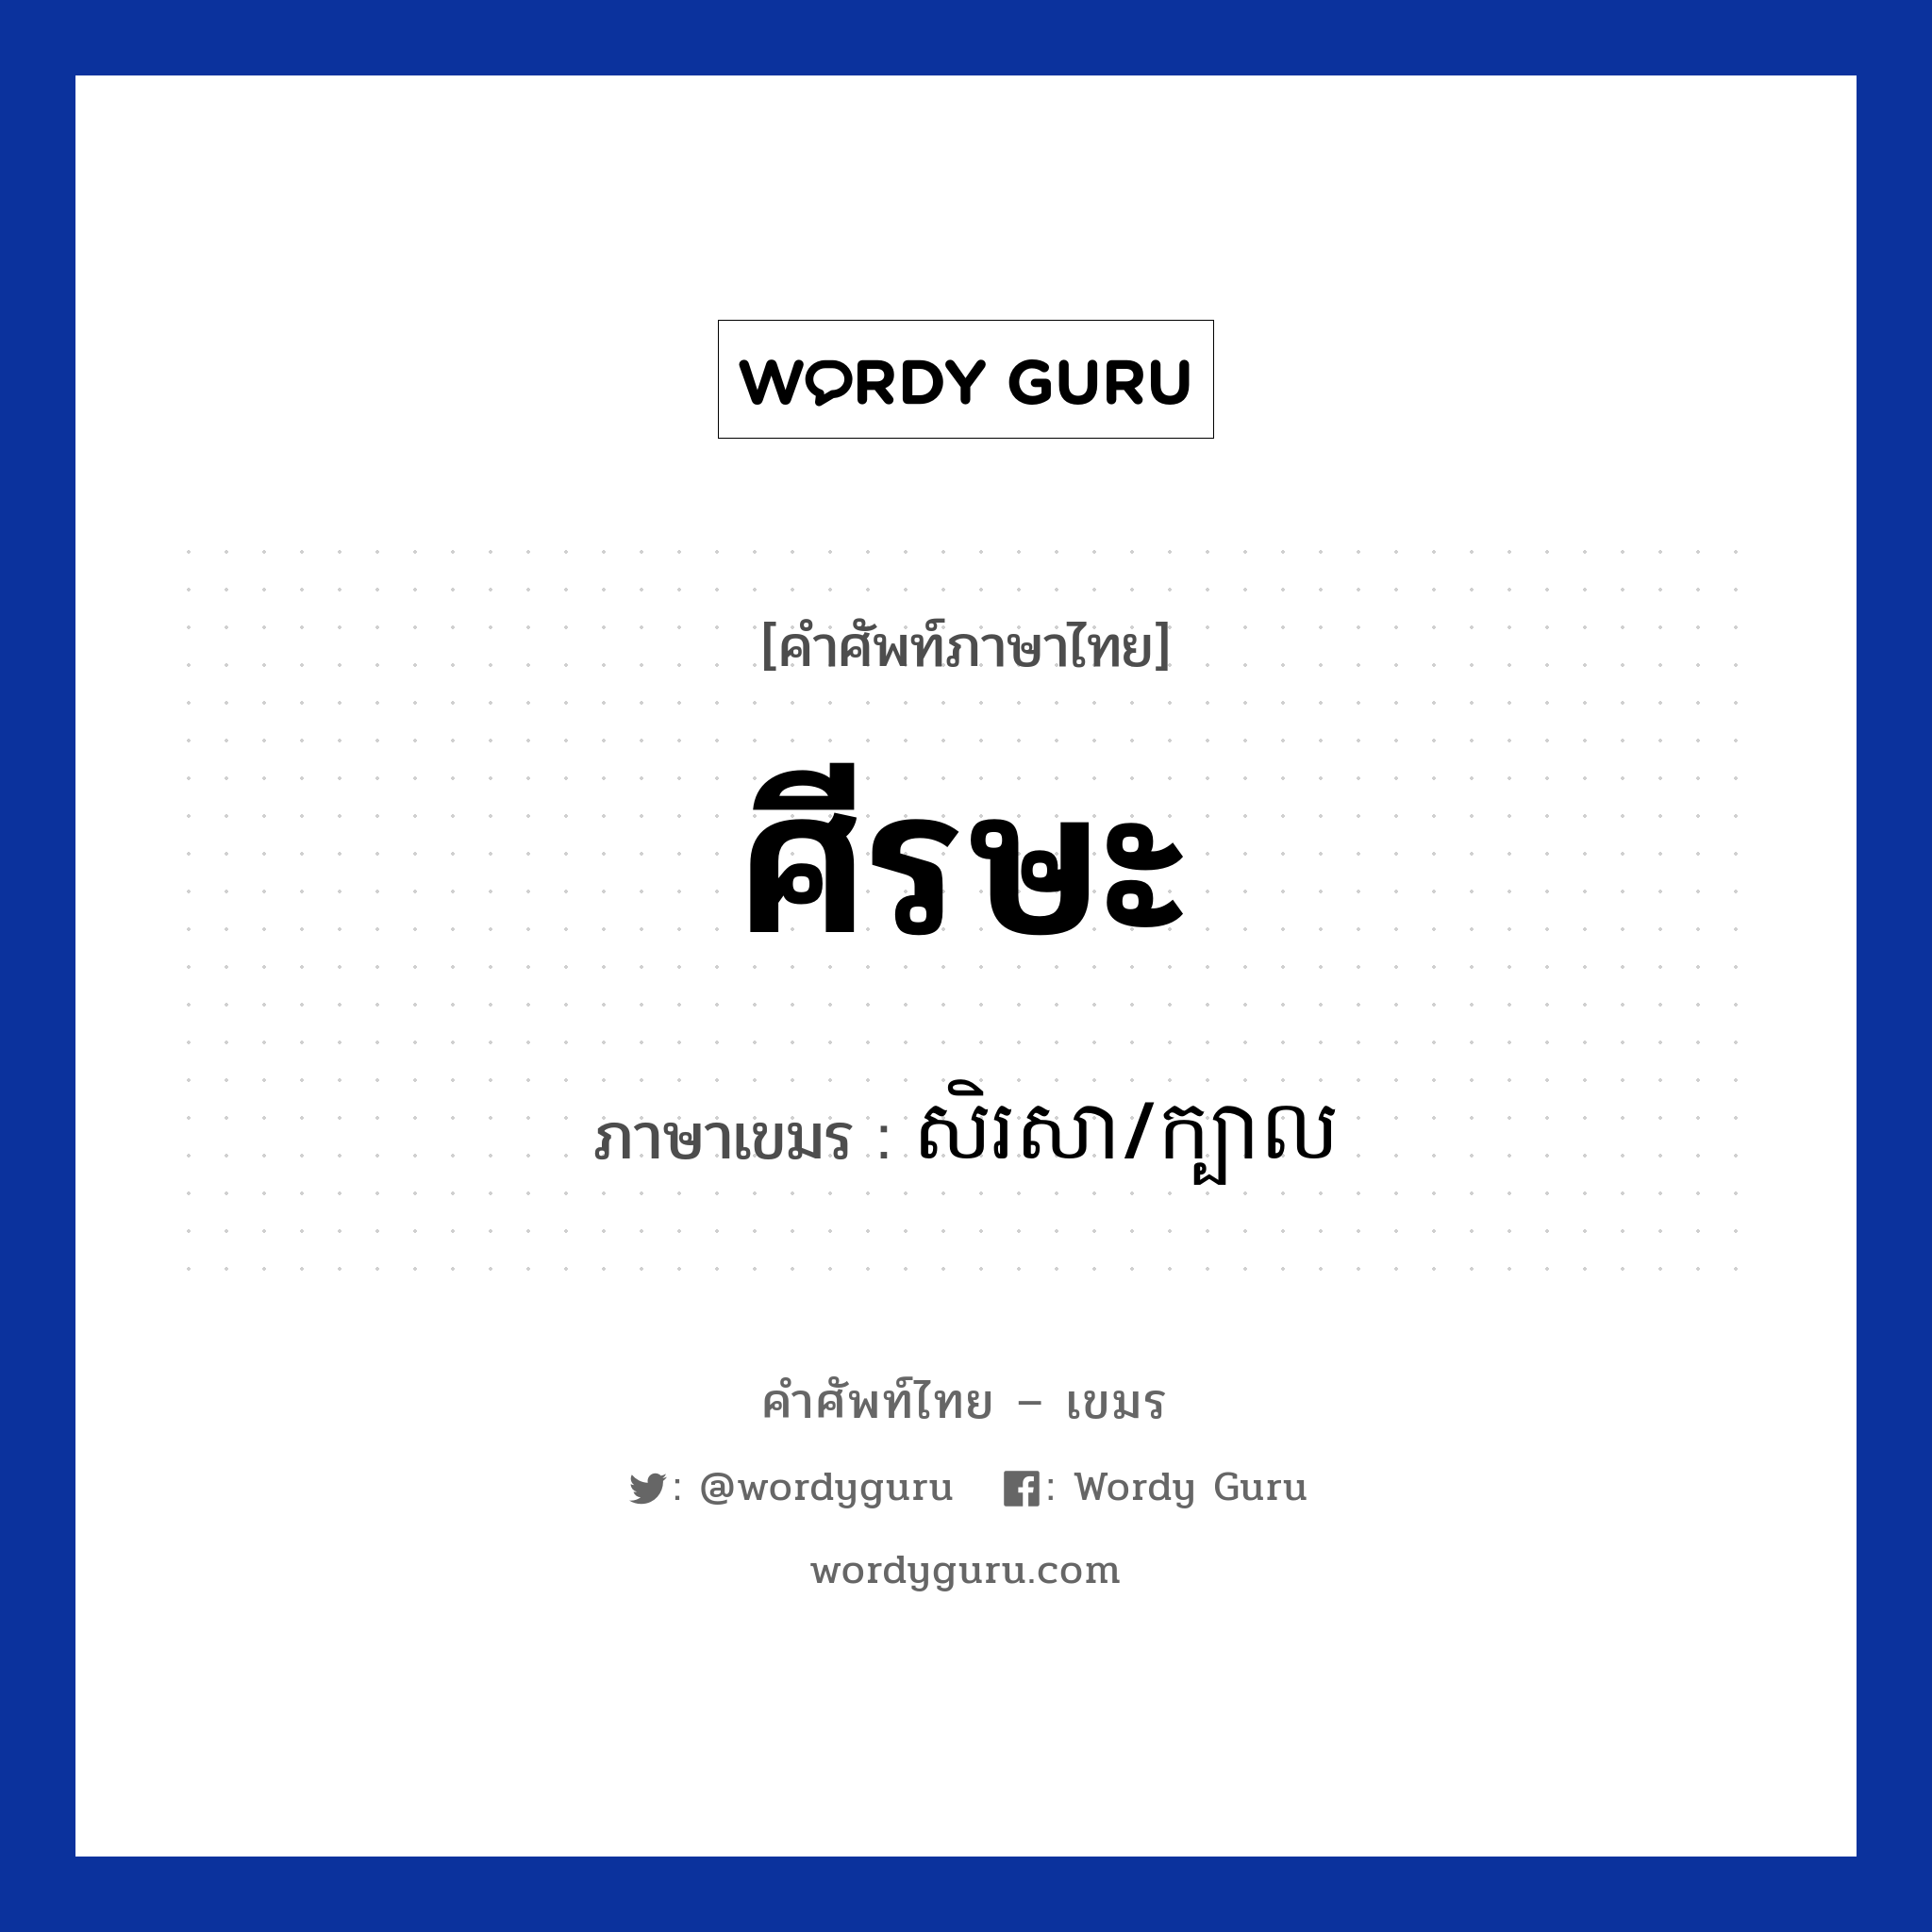 ศีรษะ ภาษาเขมรคืออะไร, คำศัพท์ภาษาไทย - เขมร ศีรษะ ภาษาเขมร សិរសា/ក្បាល หมวด อวัยวะ Sirasa/kbal หมวด อวัยวะ